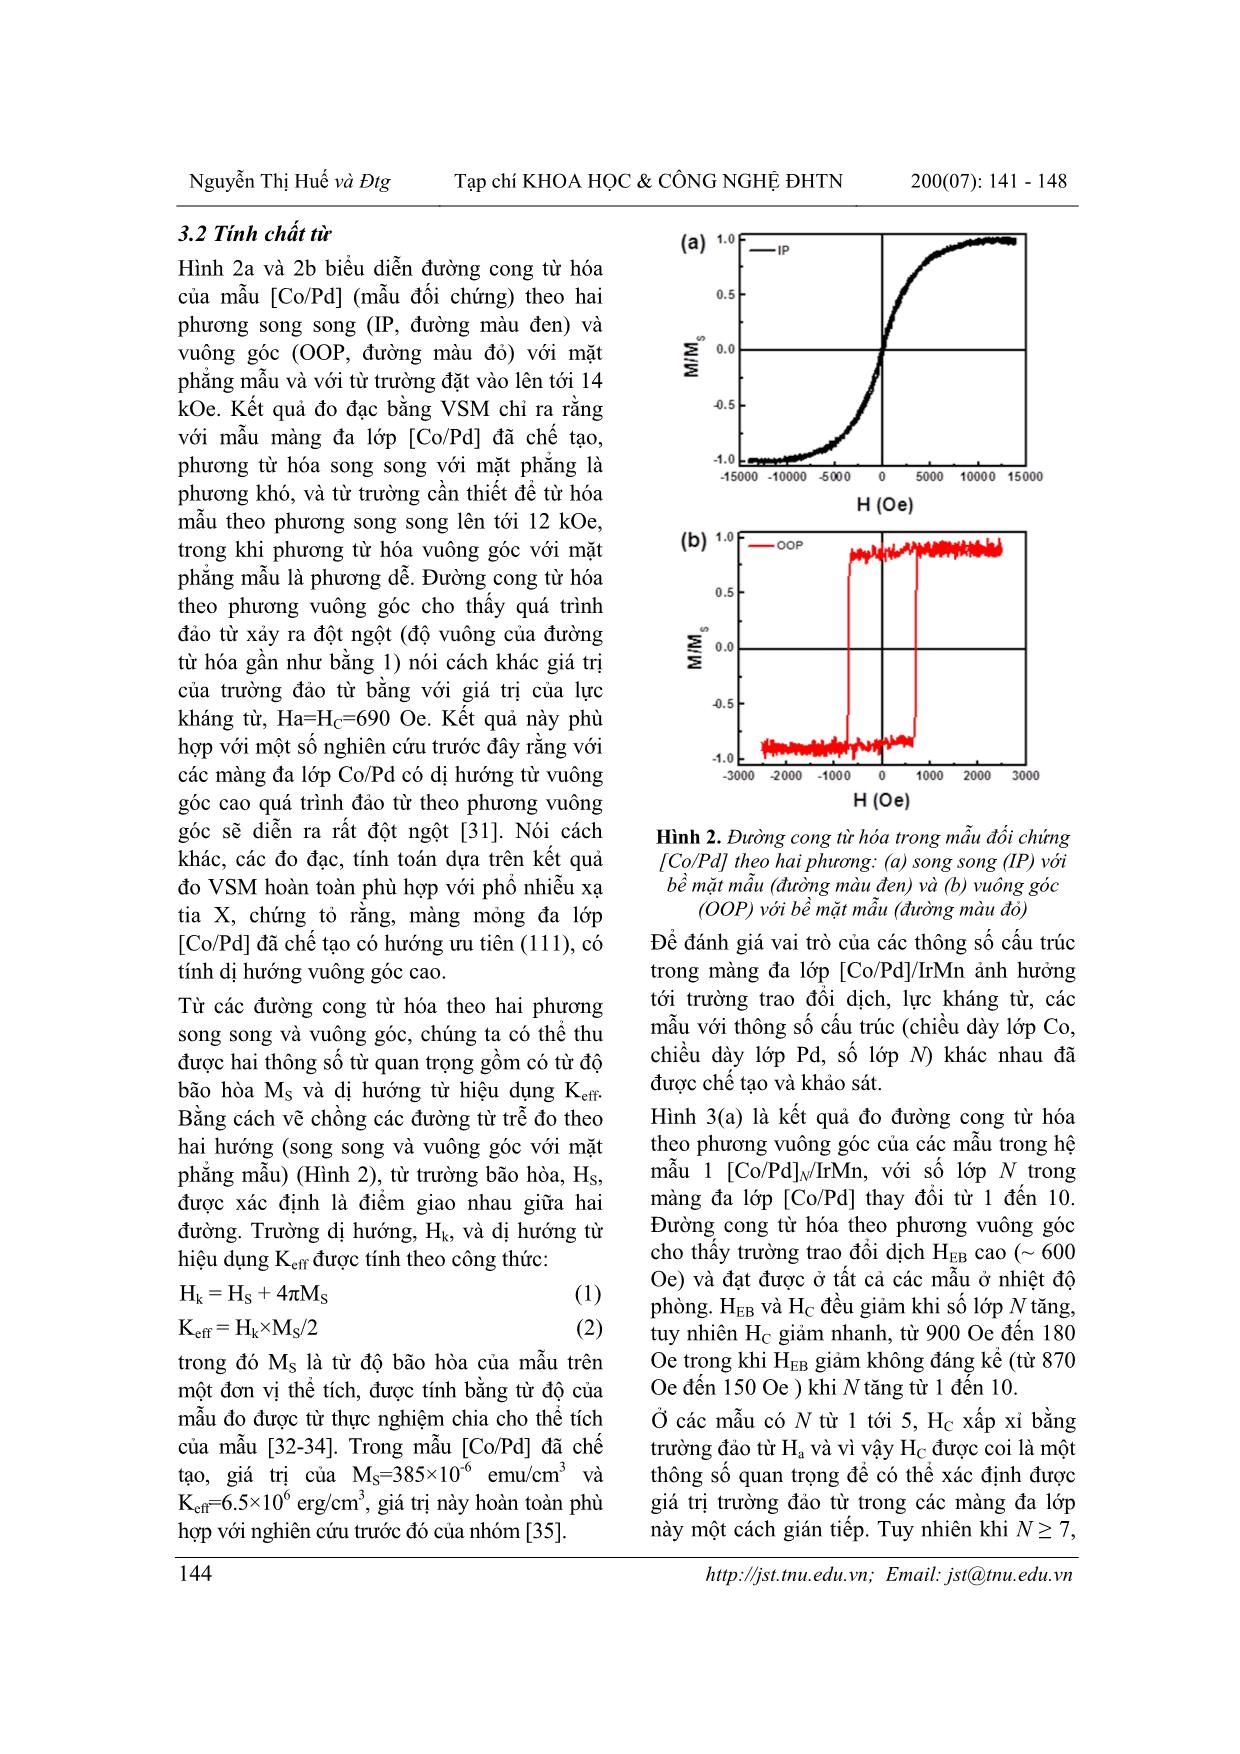 Điều biến trường trao đổi dịch và lực kháng từ theo phương vuông góc trong màng đa lớp [co/pd]/irmn trang 4